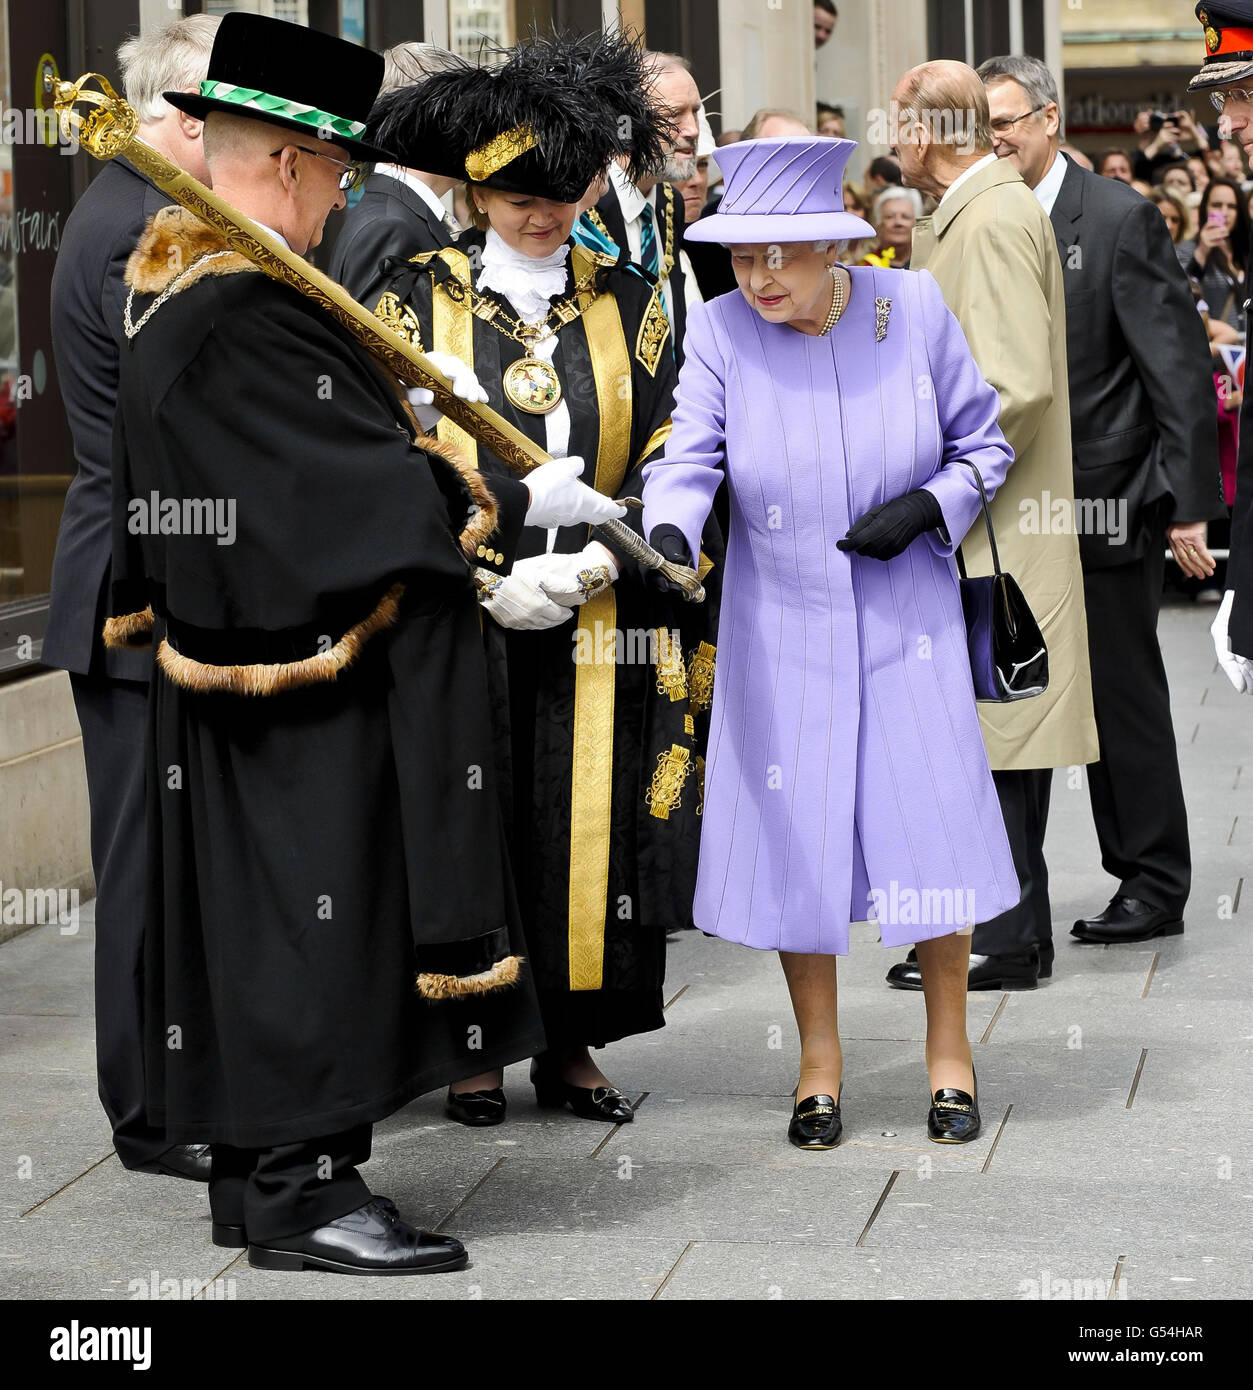 Königin Elisabeth II. Untersucht ein zeremonielles Schwert während eines  Besuchs im Stadtzentrum von Exeter Stockfotografie - Alamy